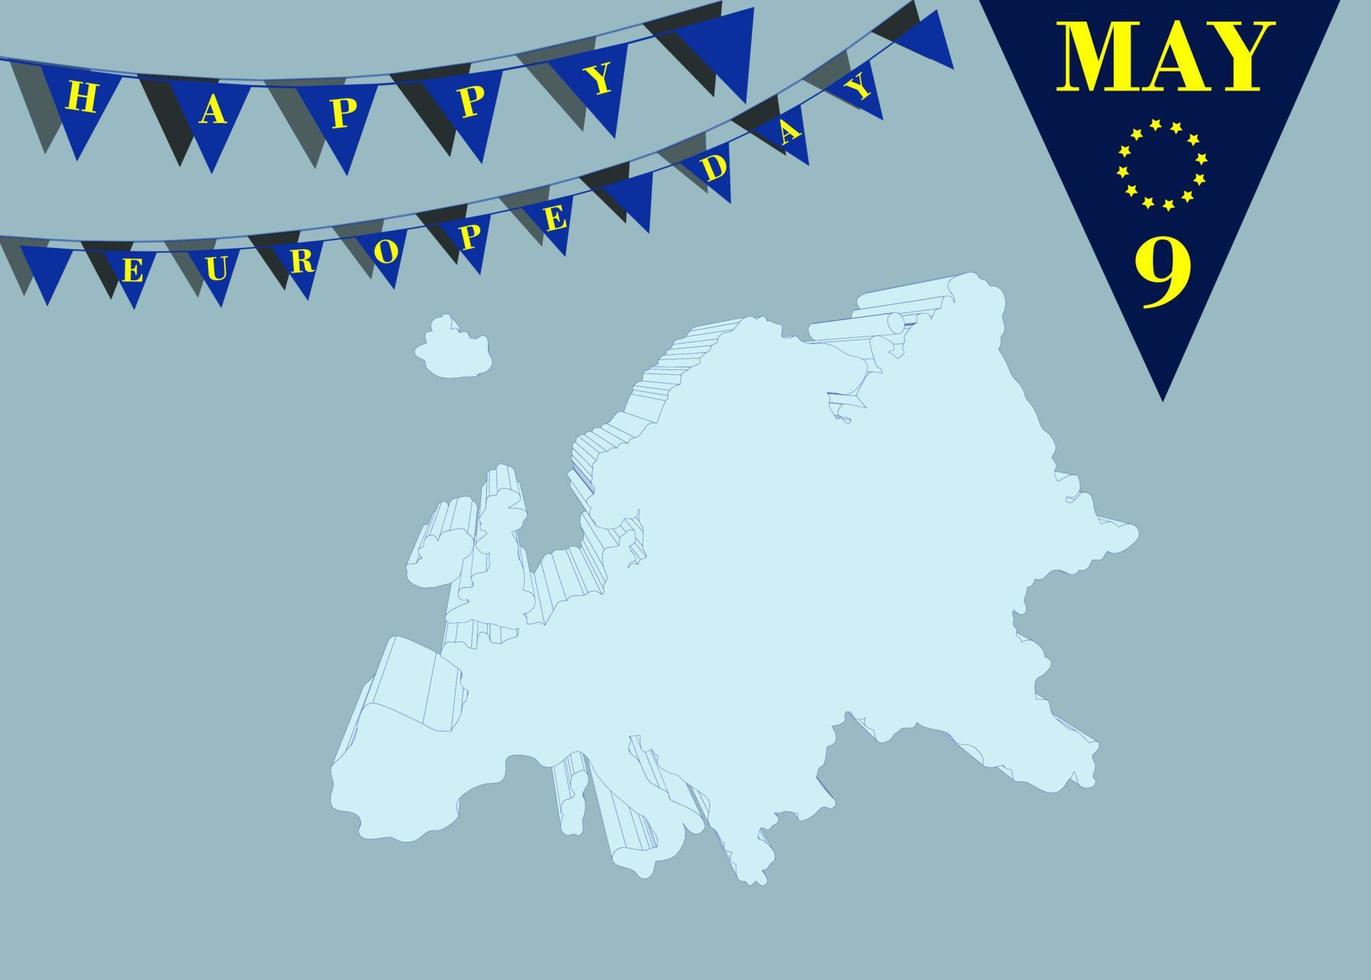 Día de Europa 9 de mayo. mapa de europa un concepto de bandera. diseño de fondo vectorial, pancarta, afiche o tarjeta con banderas y letras. paz y unidad en europa celebrada el 9 de mayo por la unión europea. vector